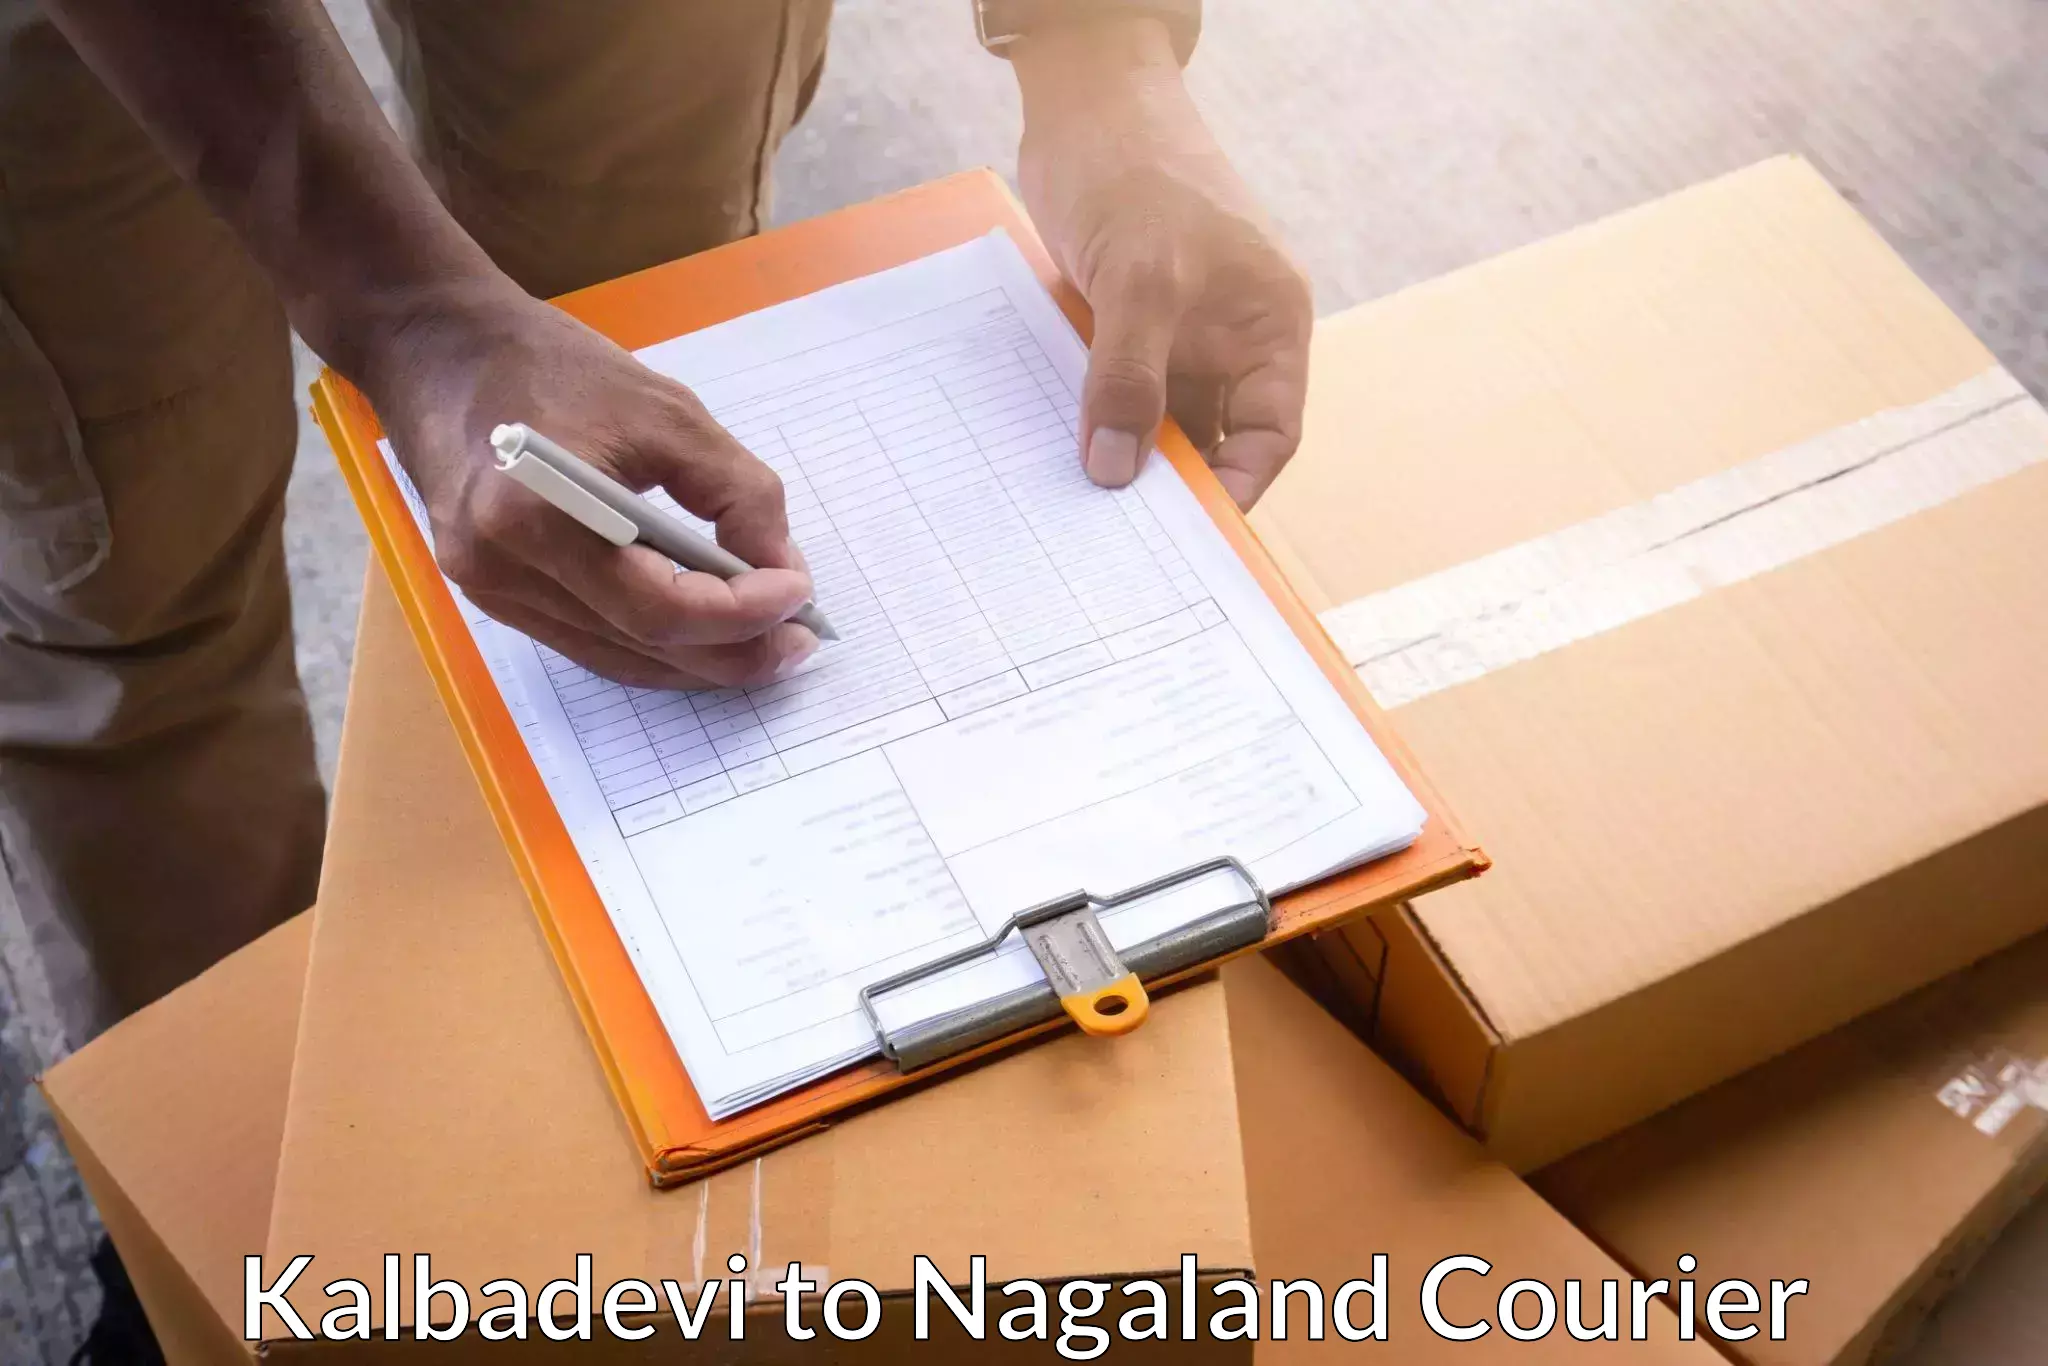 Efficient parcel transport Kalbadevi to Nagaland